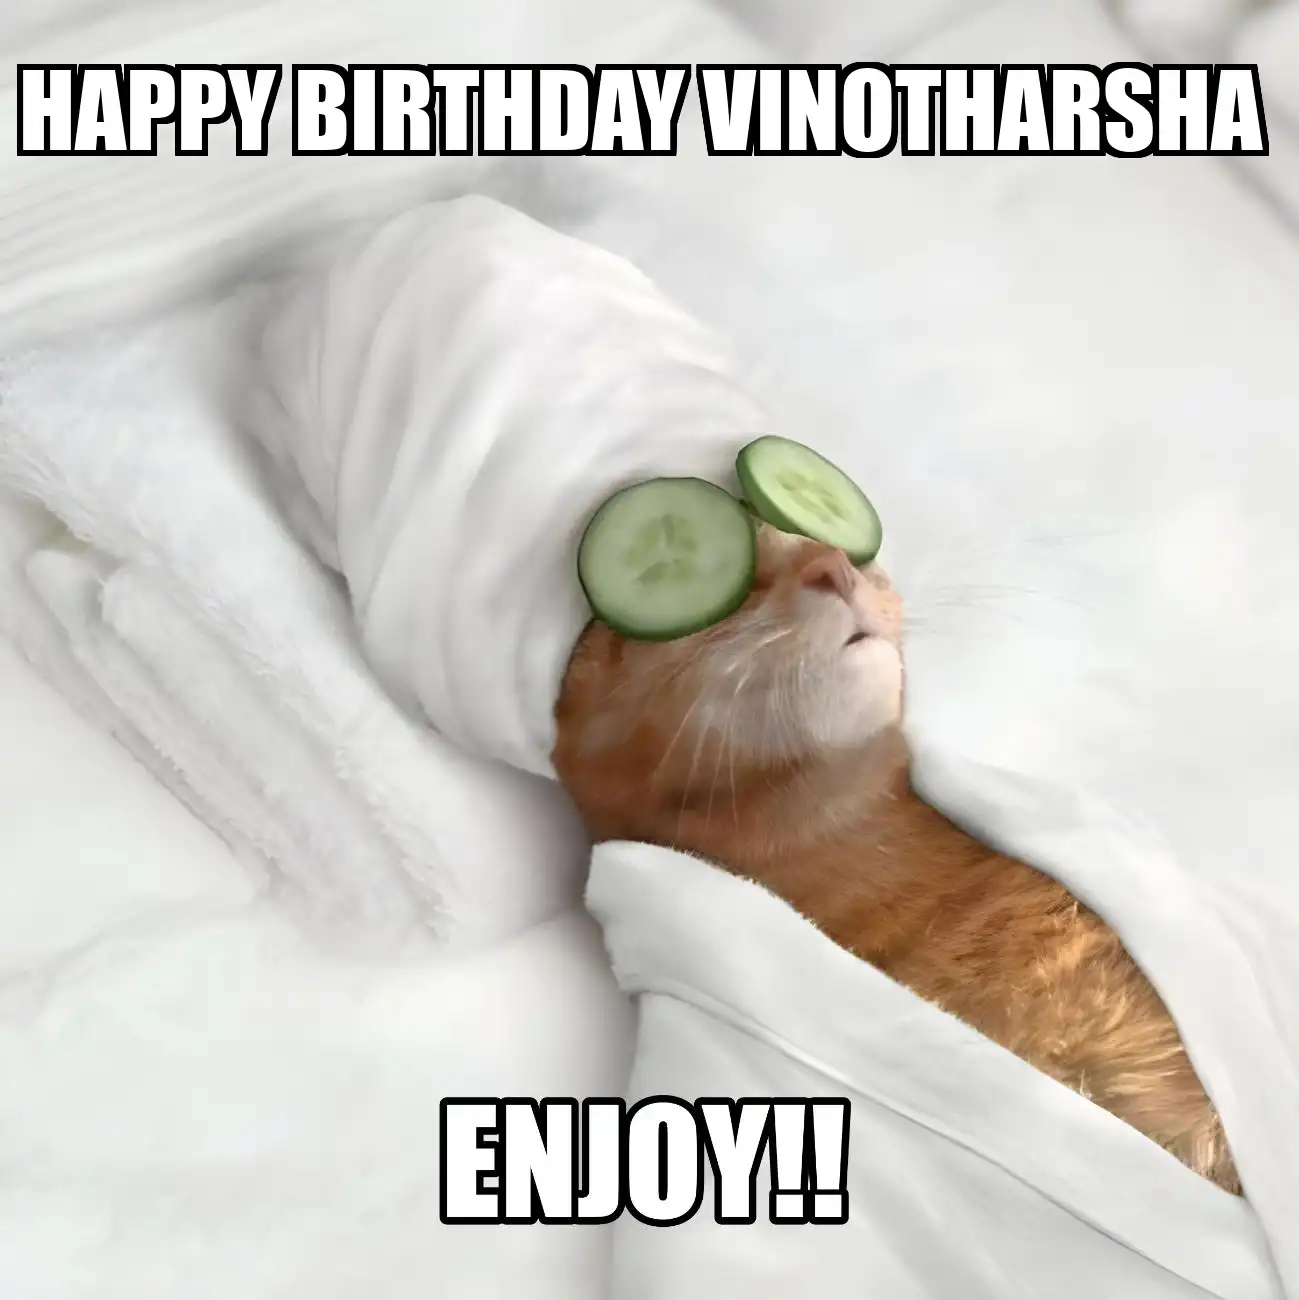 Happy Birthday Vinotharsha Enjoy Cat Meme